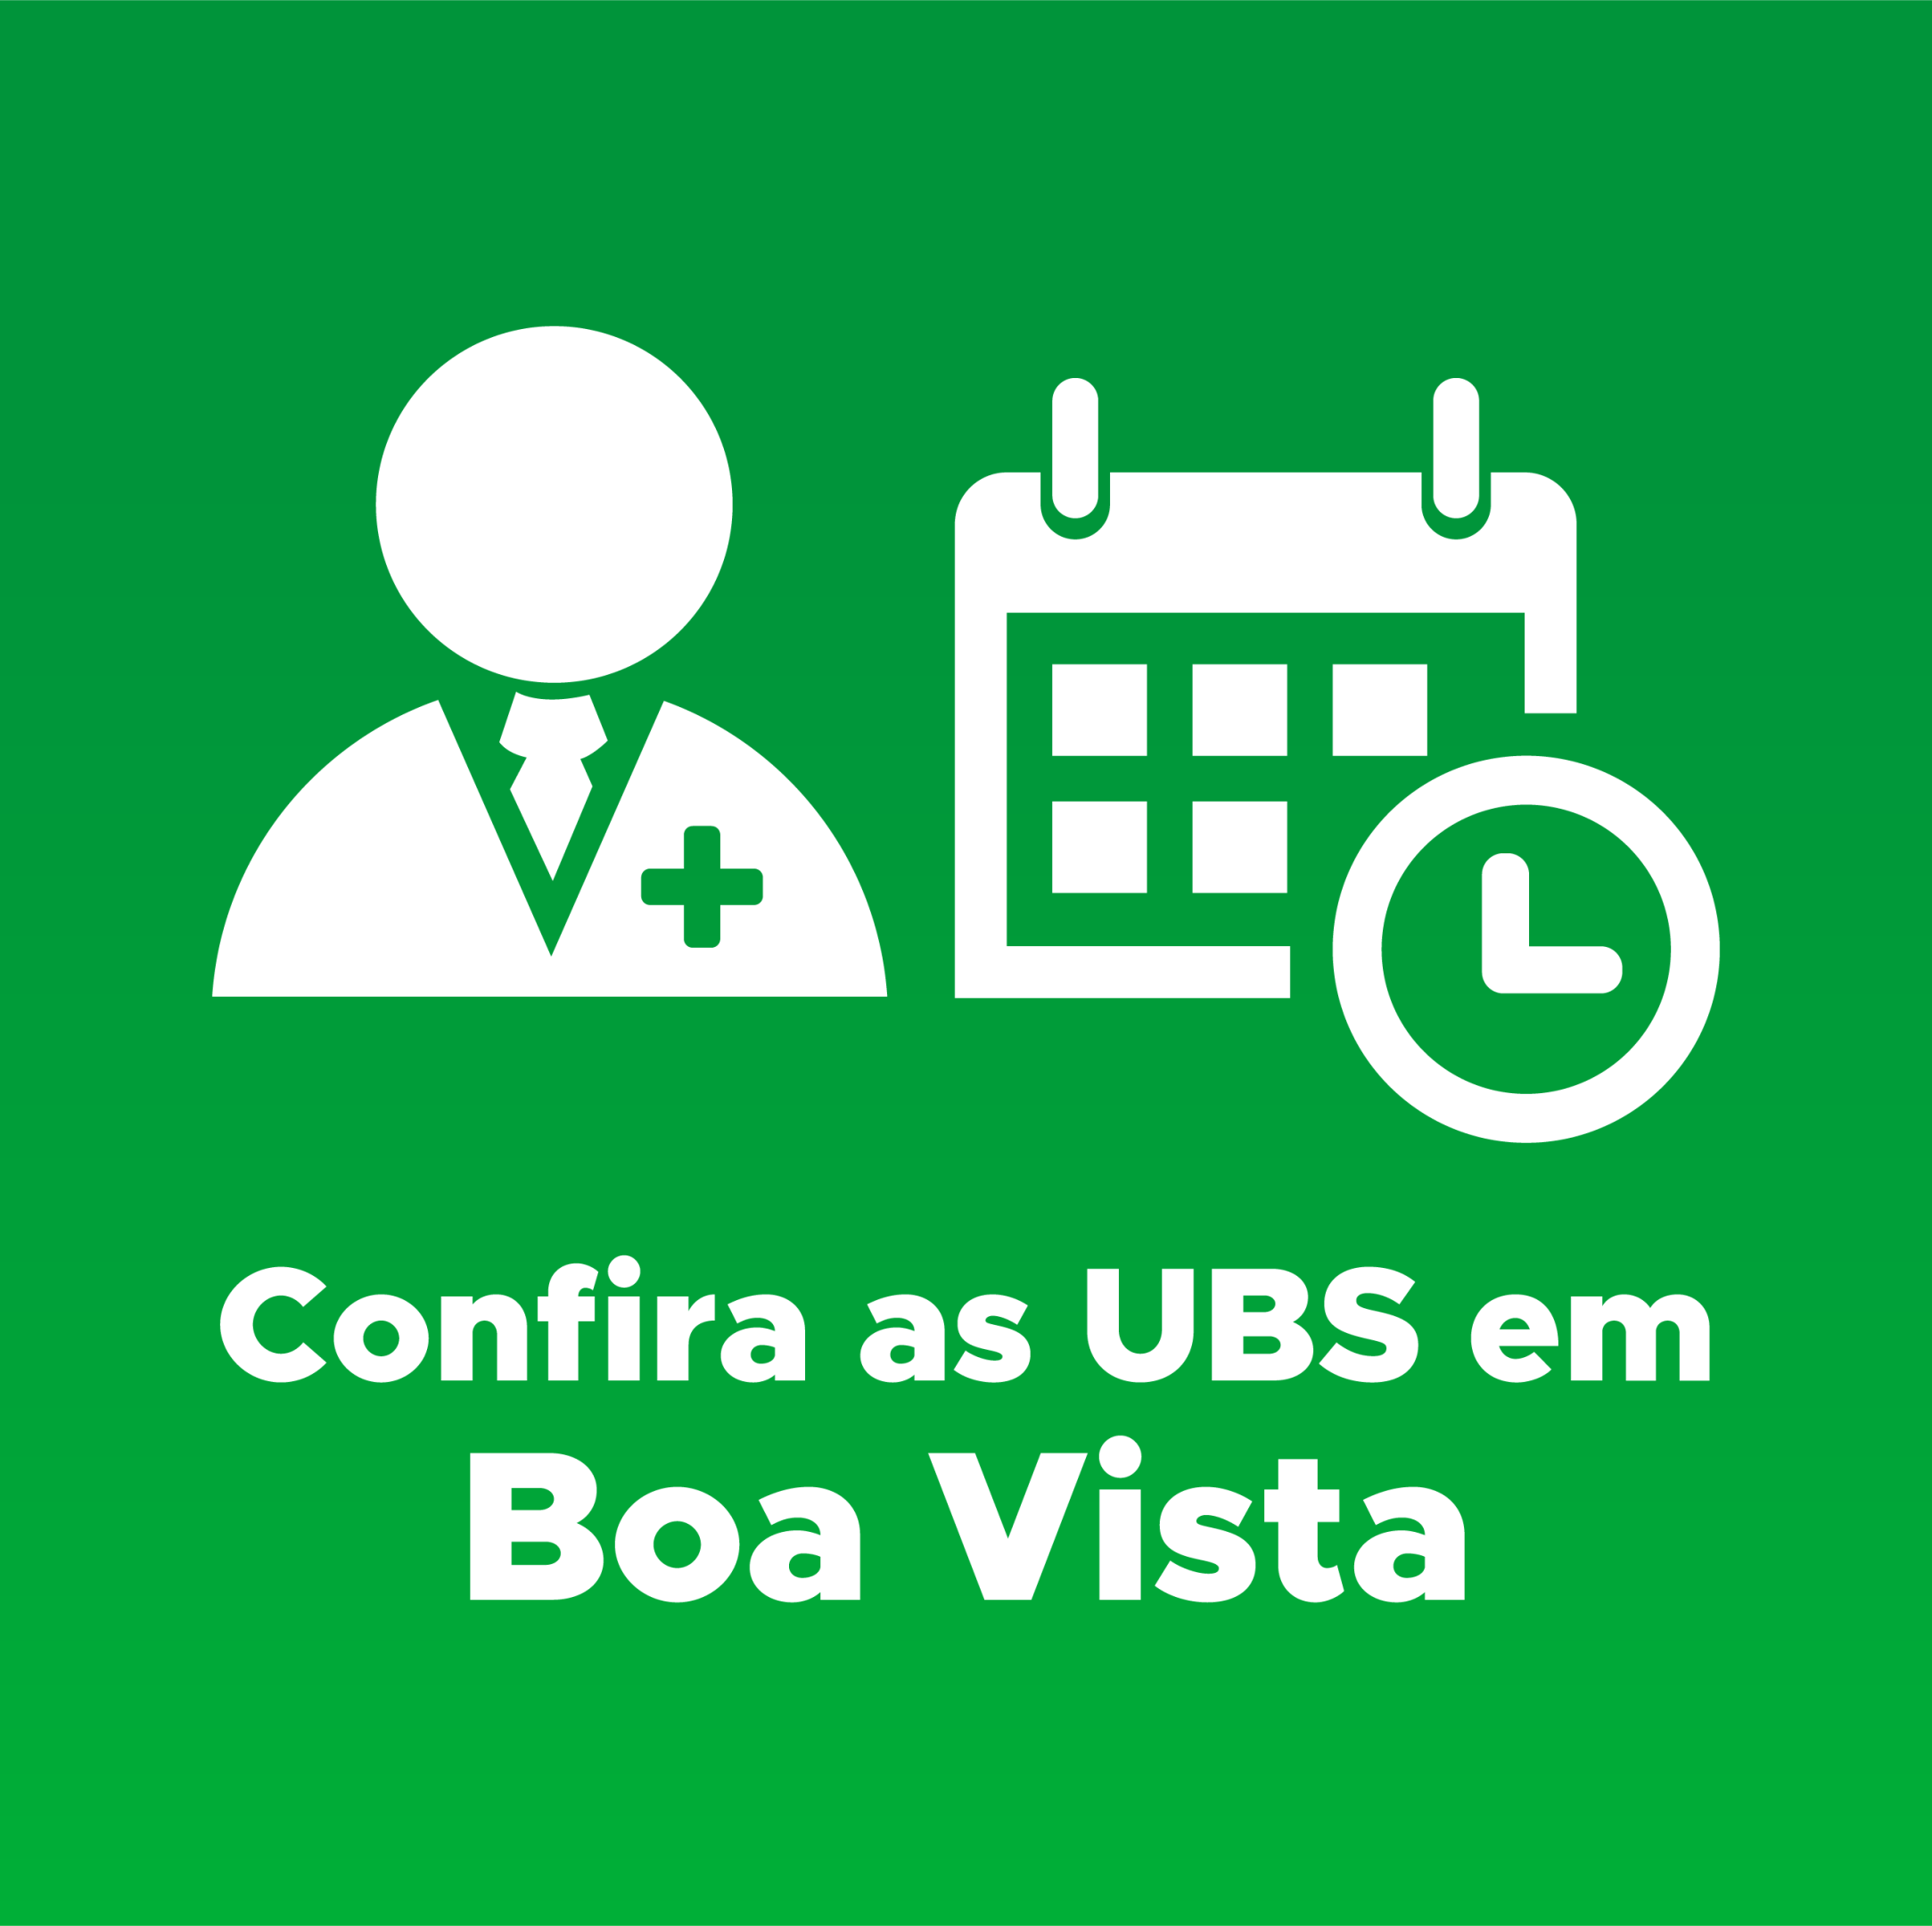 UBS em Boa Vista